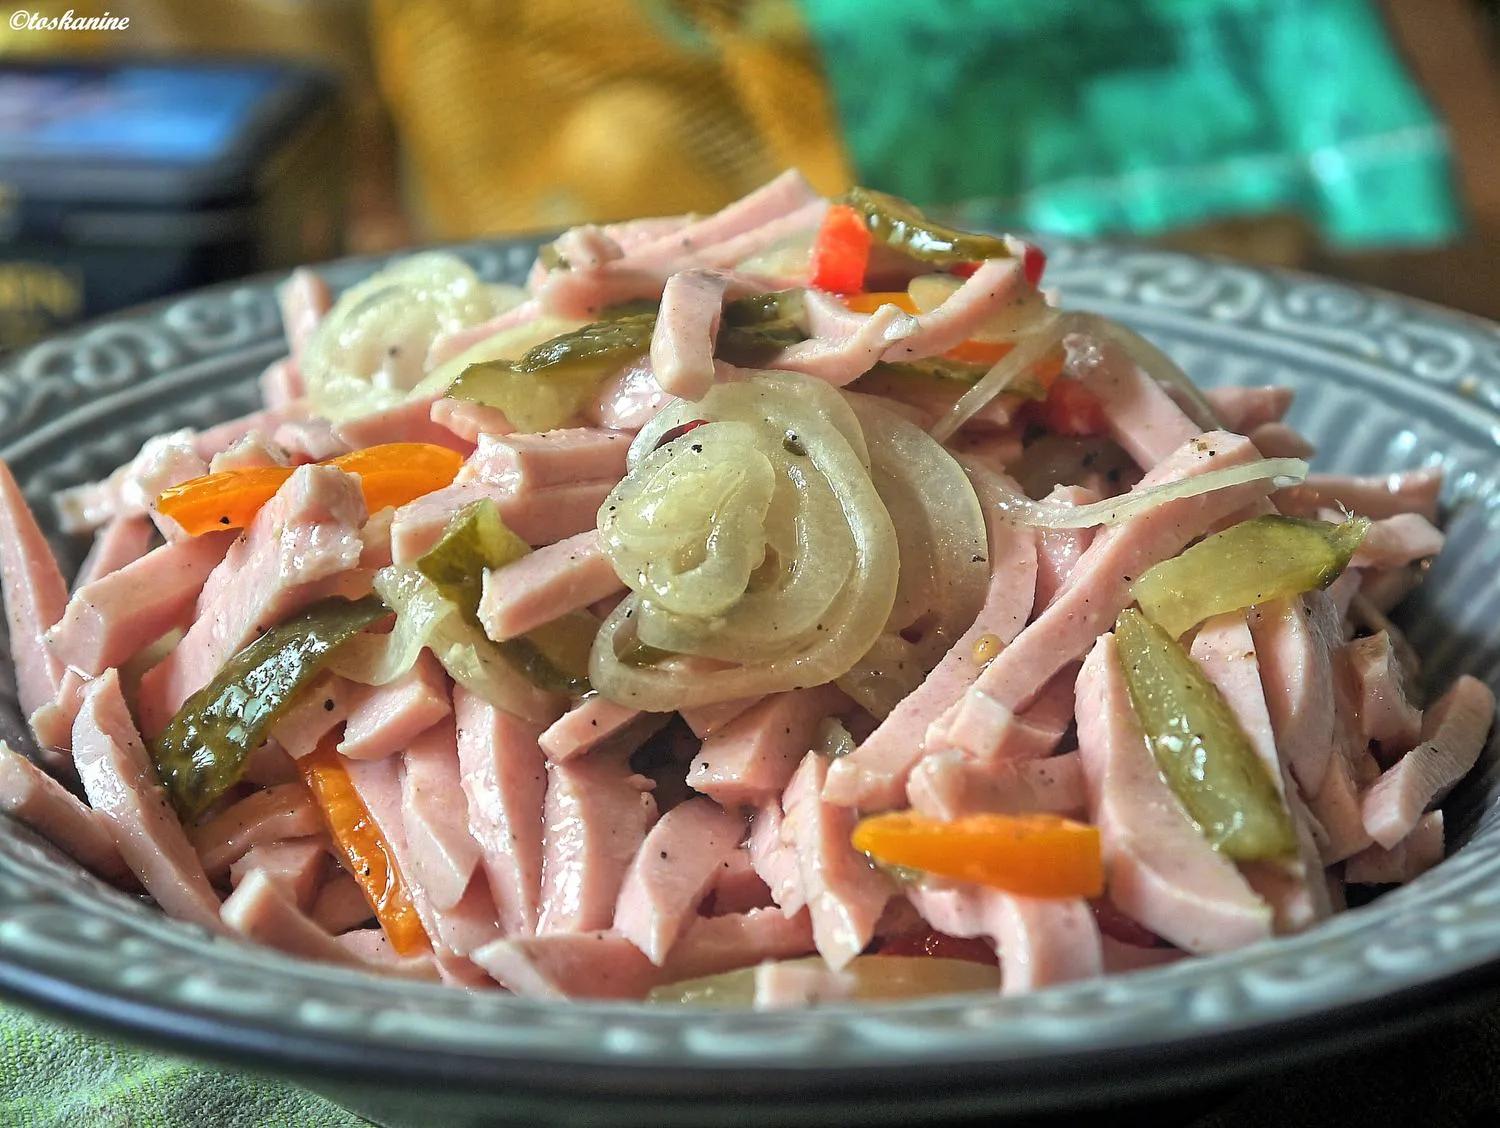 Wurstsalat mit Salat und Lyoner Fleischwurst - Rezept mit Bild - kochbar.de